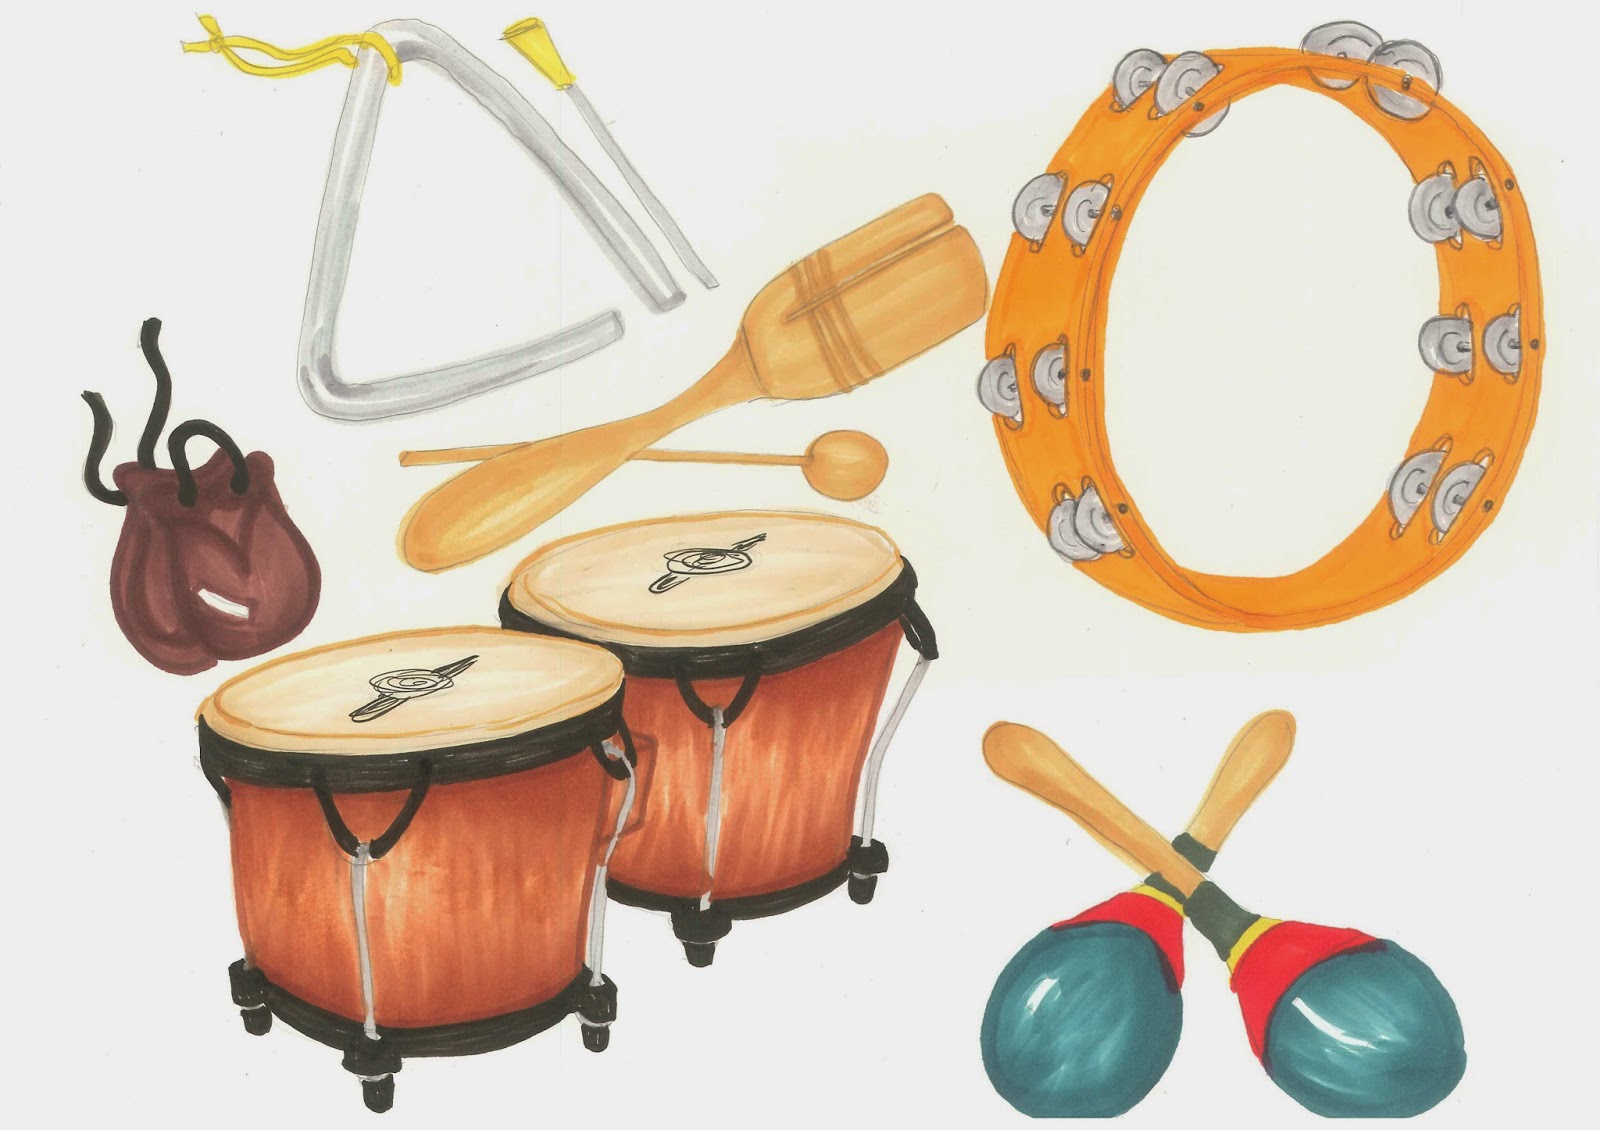 instruments clipart preschool